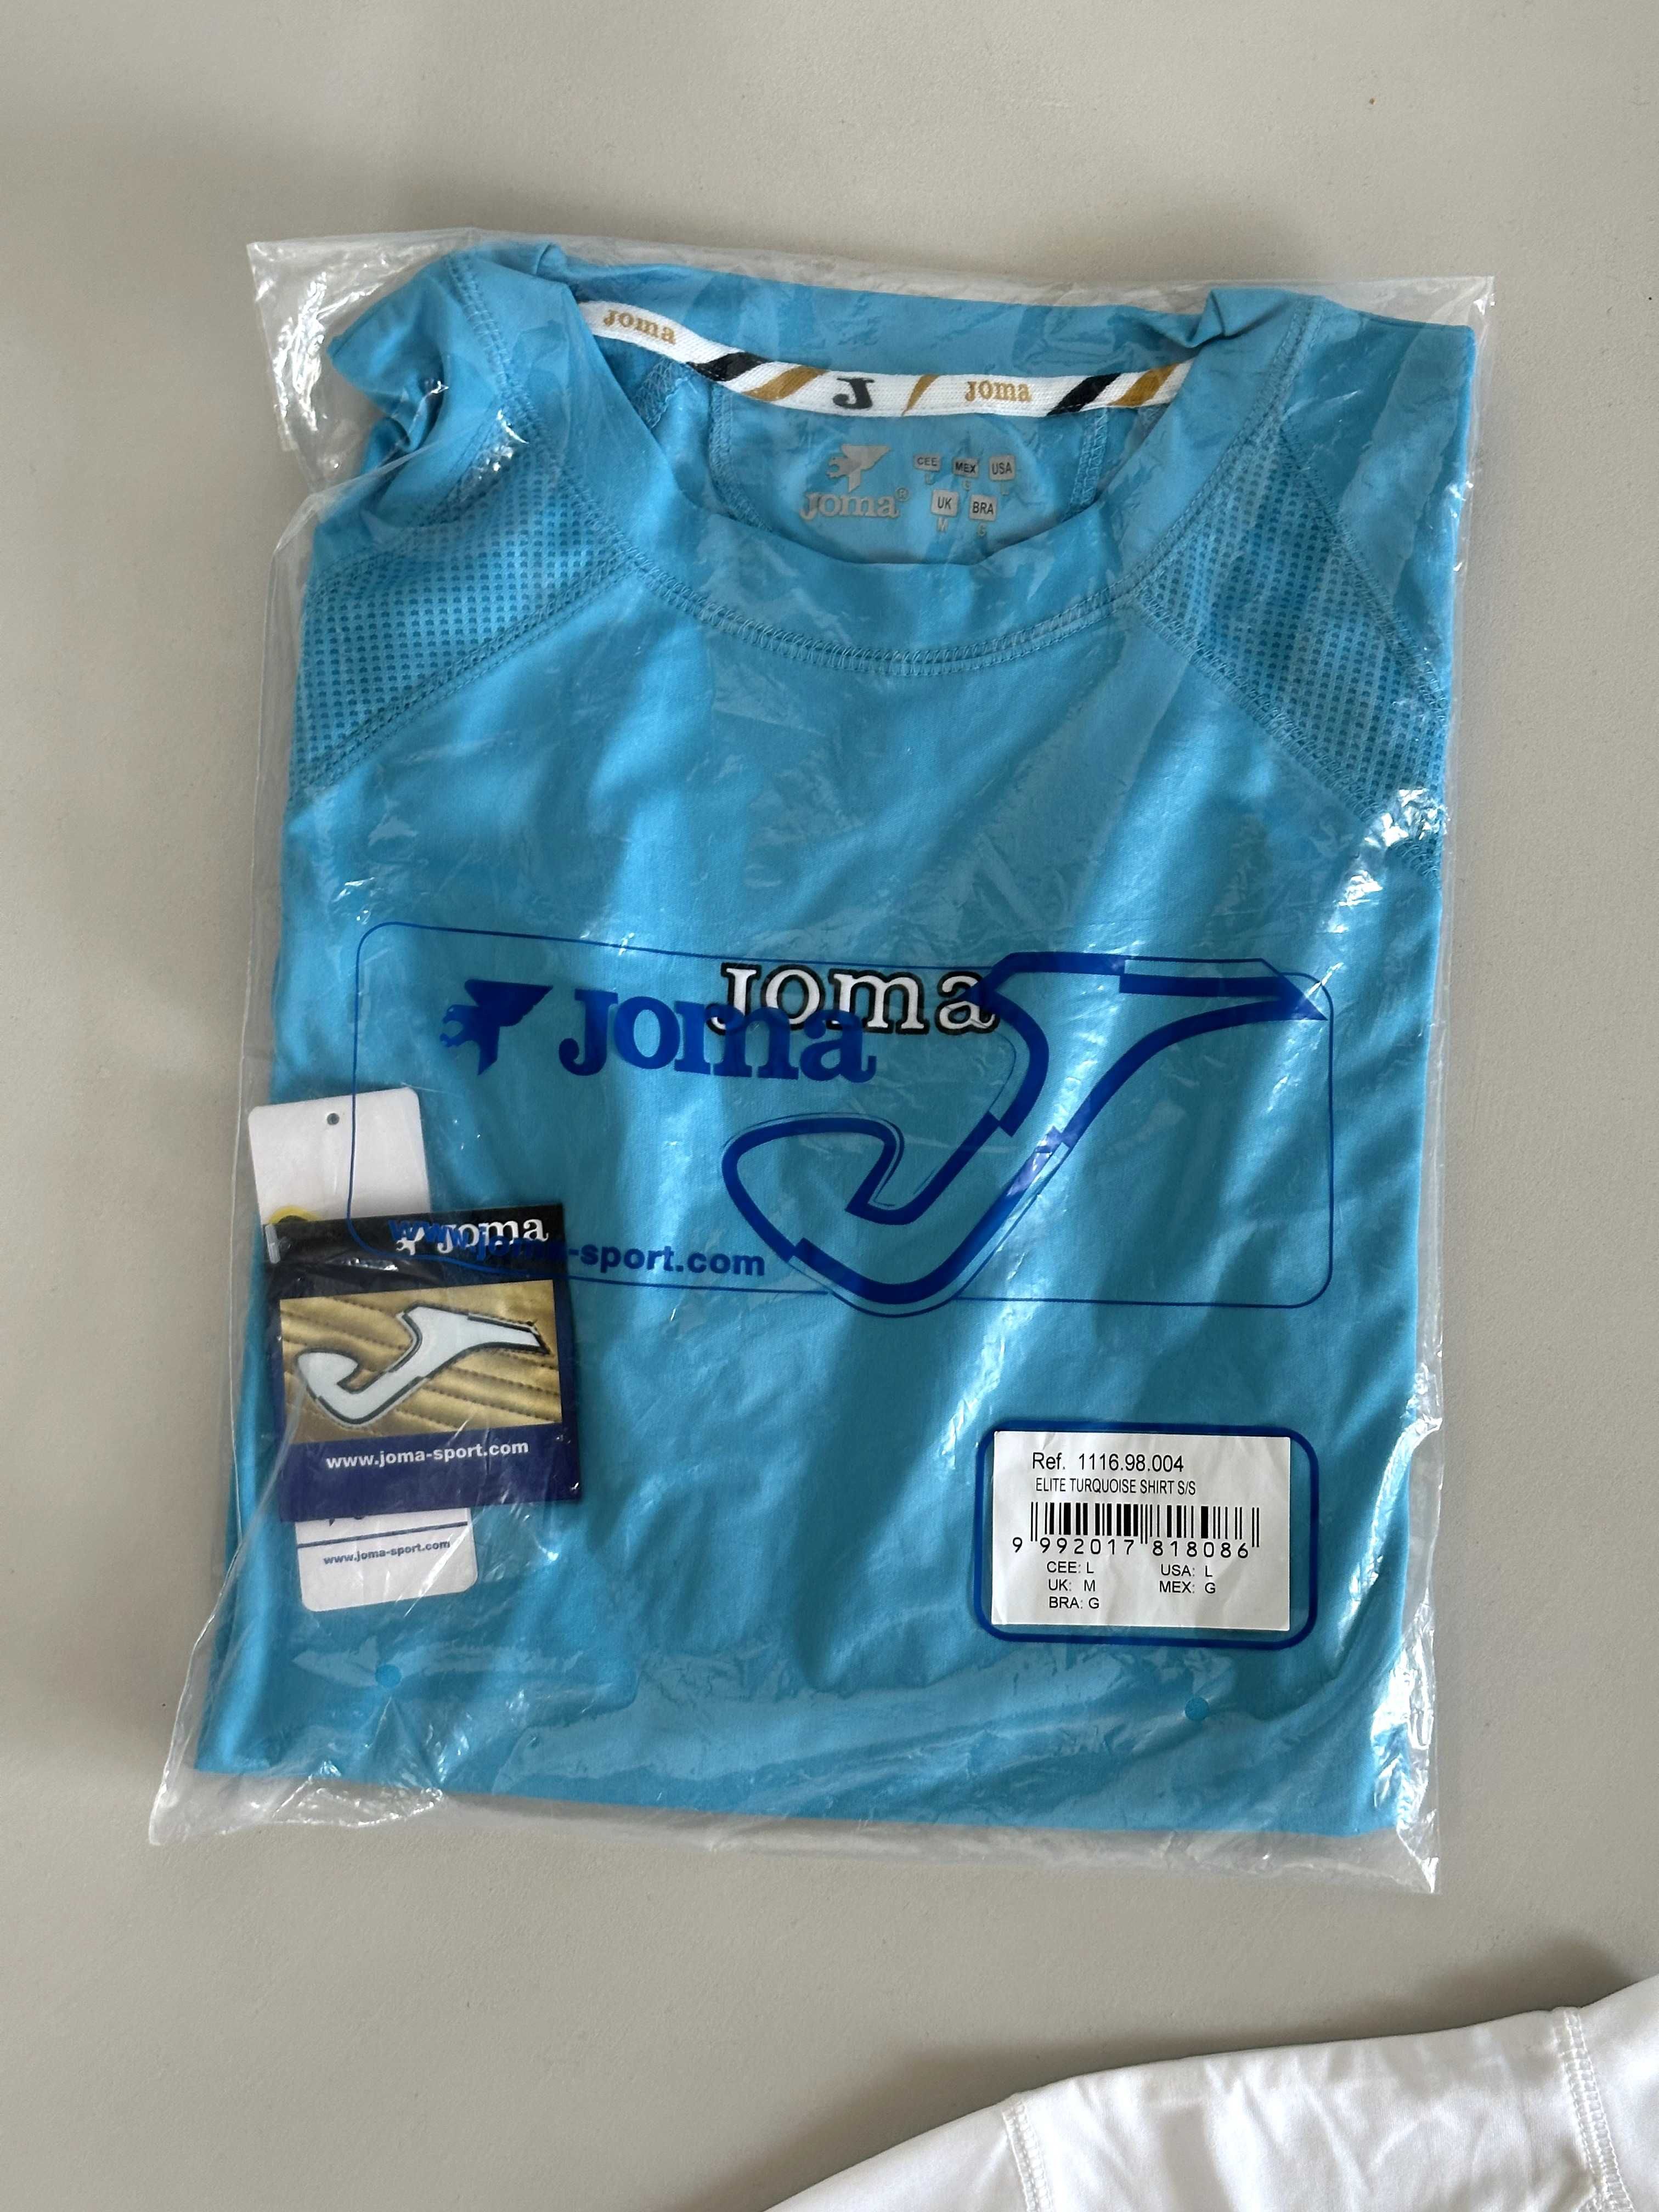 2 x Koszulki piłkarskie JOMA, nowe, biała i niebieska w rozmiarze L.